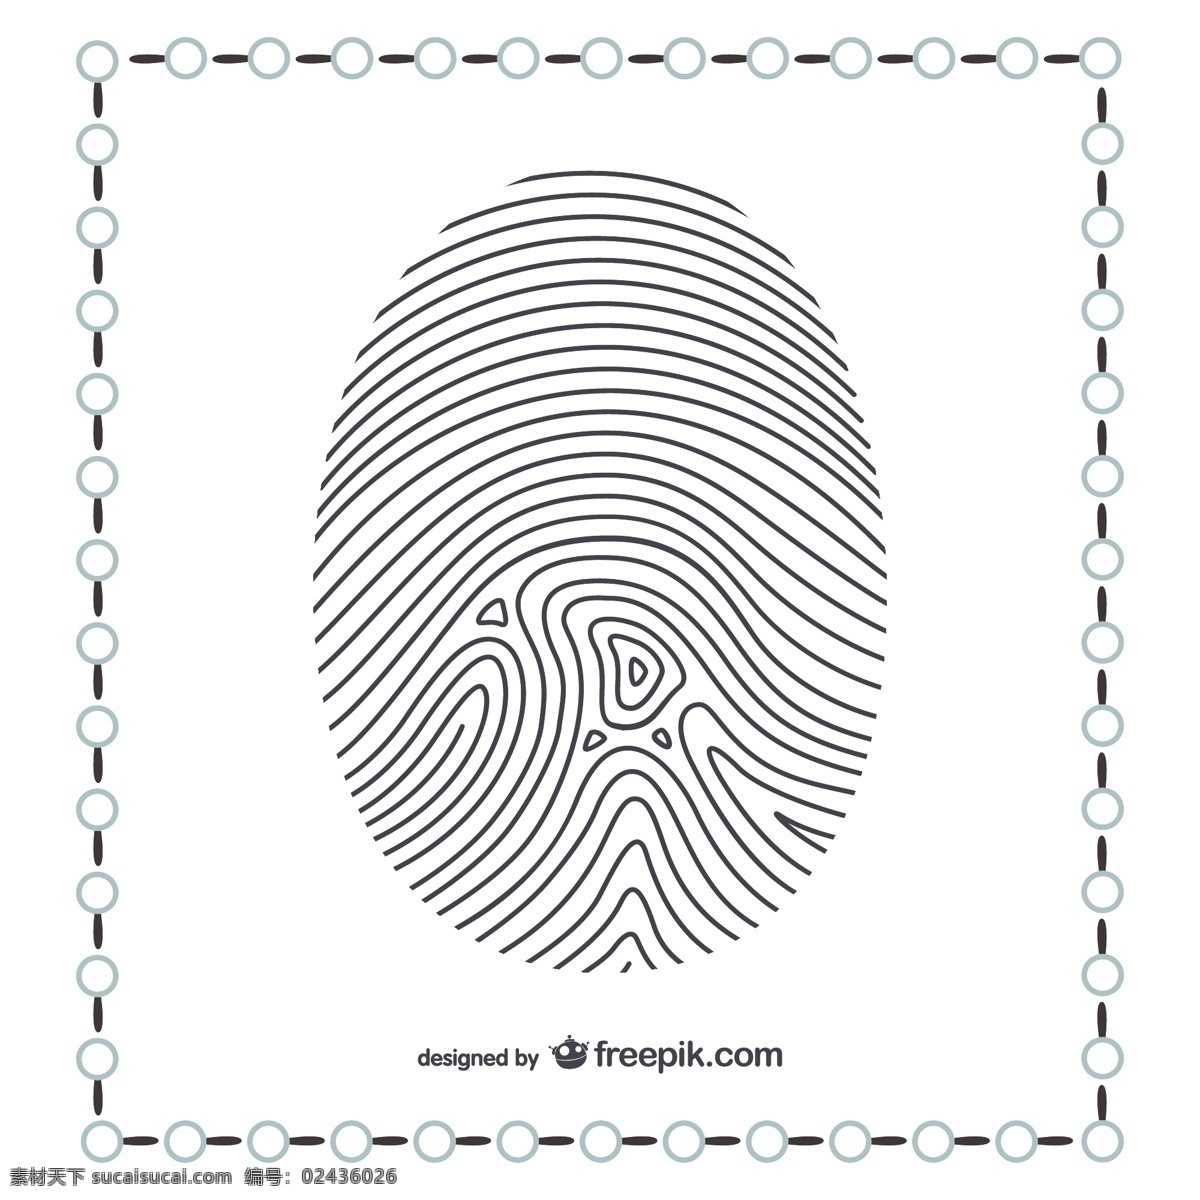 拇指指纹 手指 打印 指纹 研究 拇指 侦探 扫描 调查 线索 法医